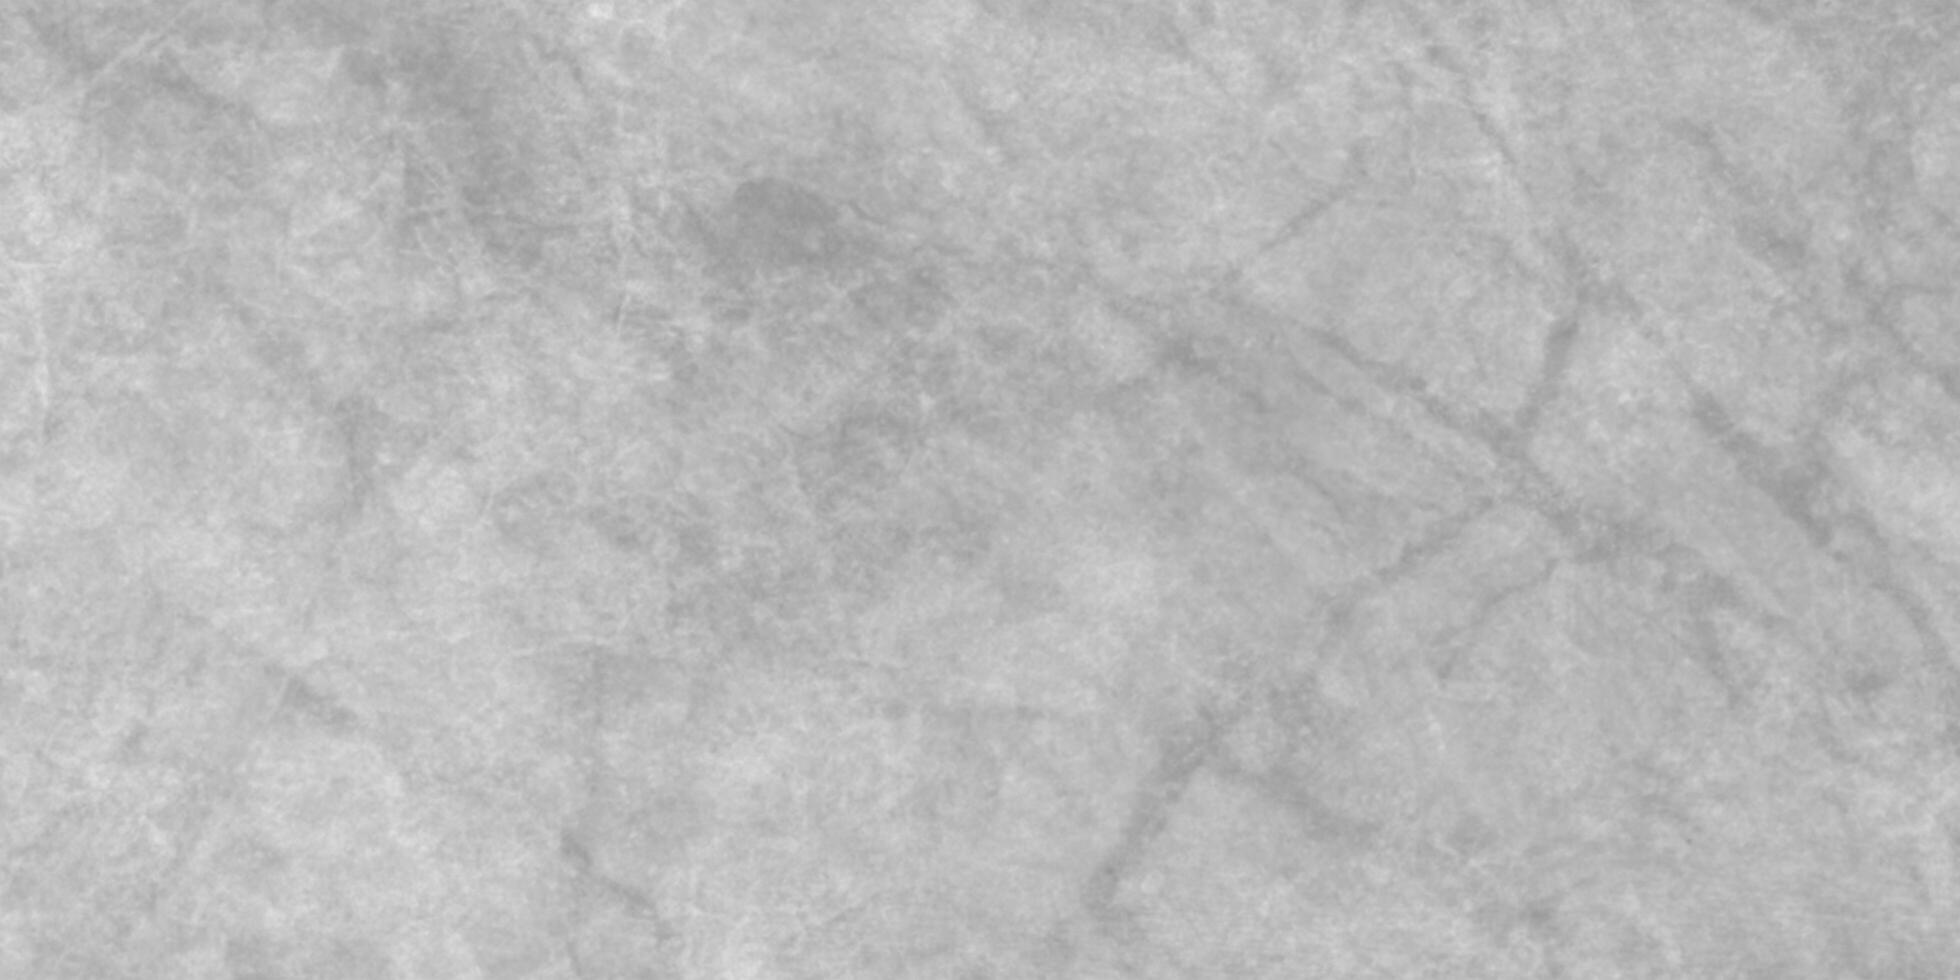 Stein oder Mauer Textur, modern Marmor gemalt Kalkstein Textur, dekorativ Weiß Papier Textur, Grunge Textur mit grau oder Weiß Hintergrund. foto